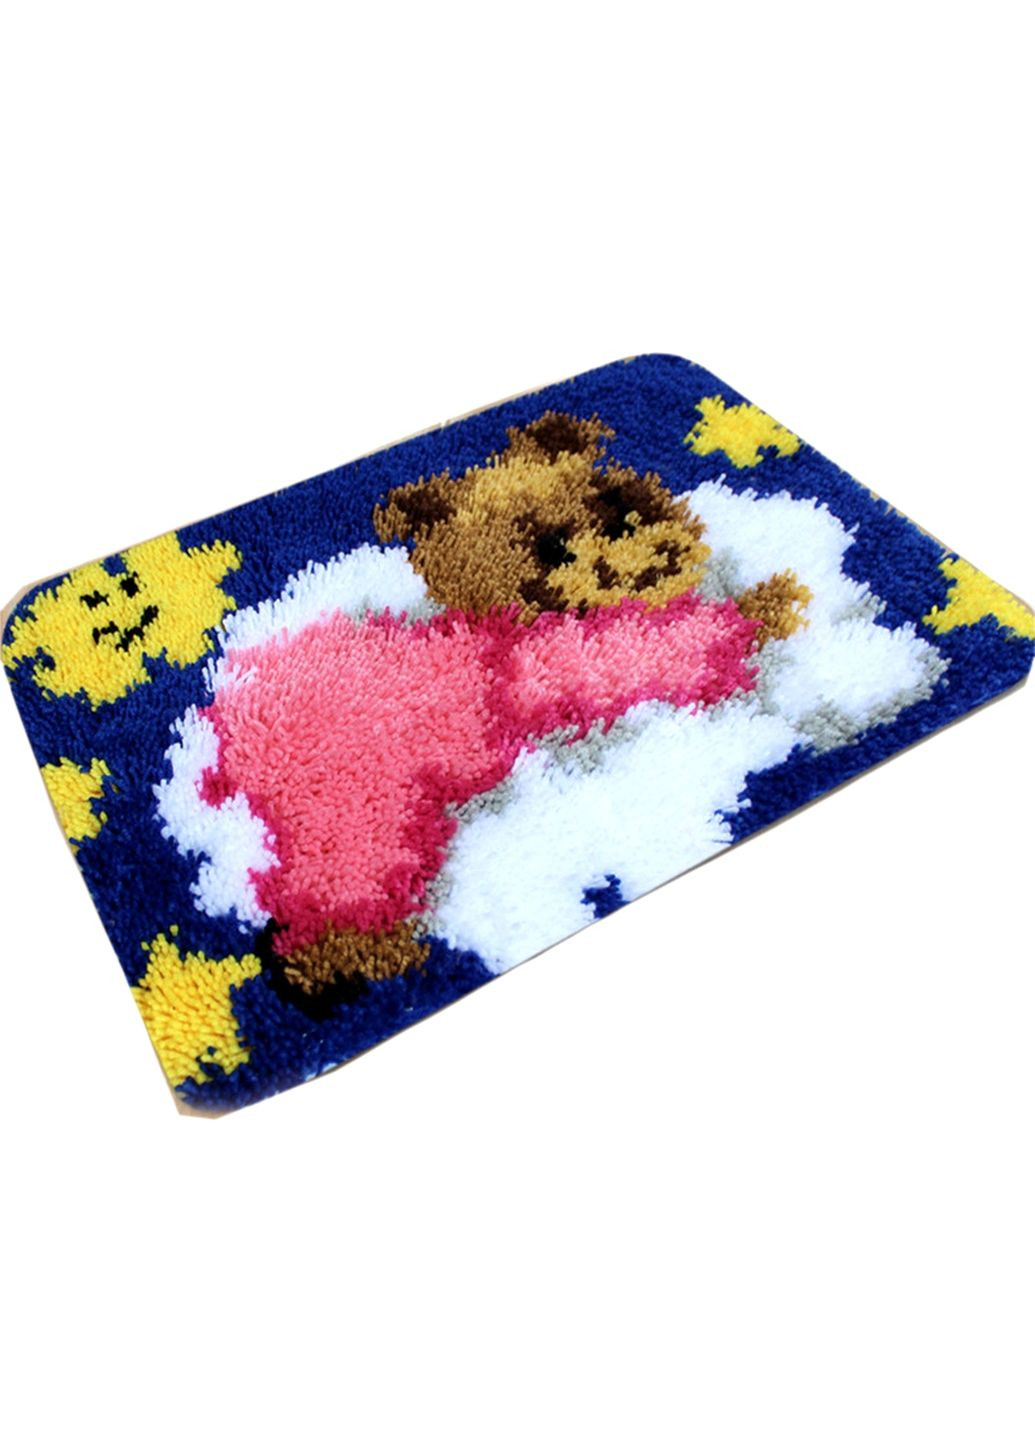 Набор для ковровой вышивки коврик мишка в розовом (основа-канва, нити, крючок для ковровой вышивки) No Brand 4437 (293943059)